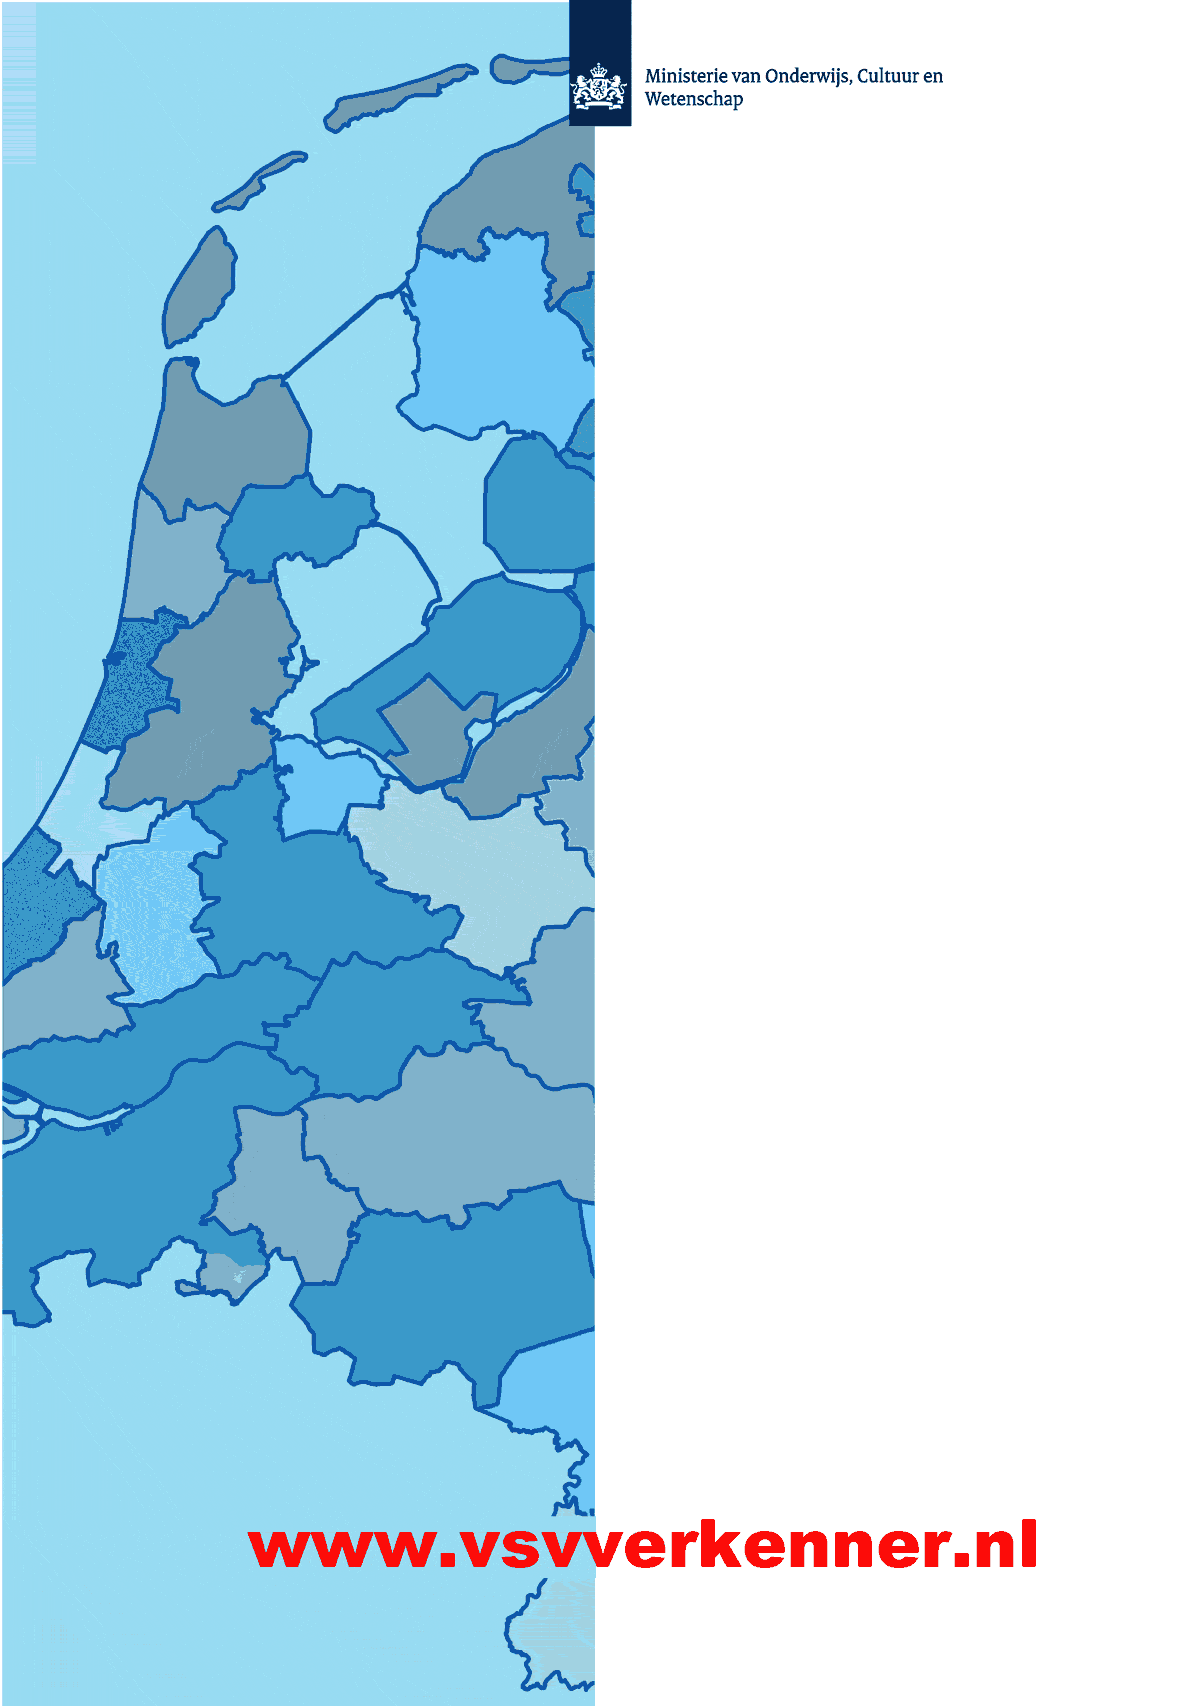 RMC Regio 36 Noord-Oost-Brabant RMC Factsheet Convenantjaar 2013-2014